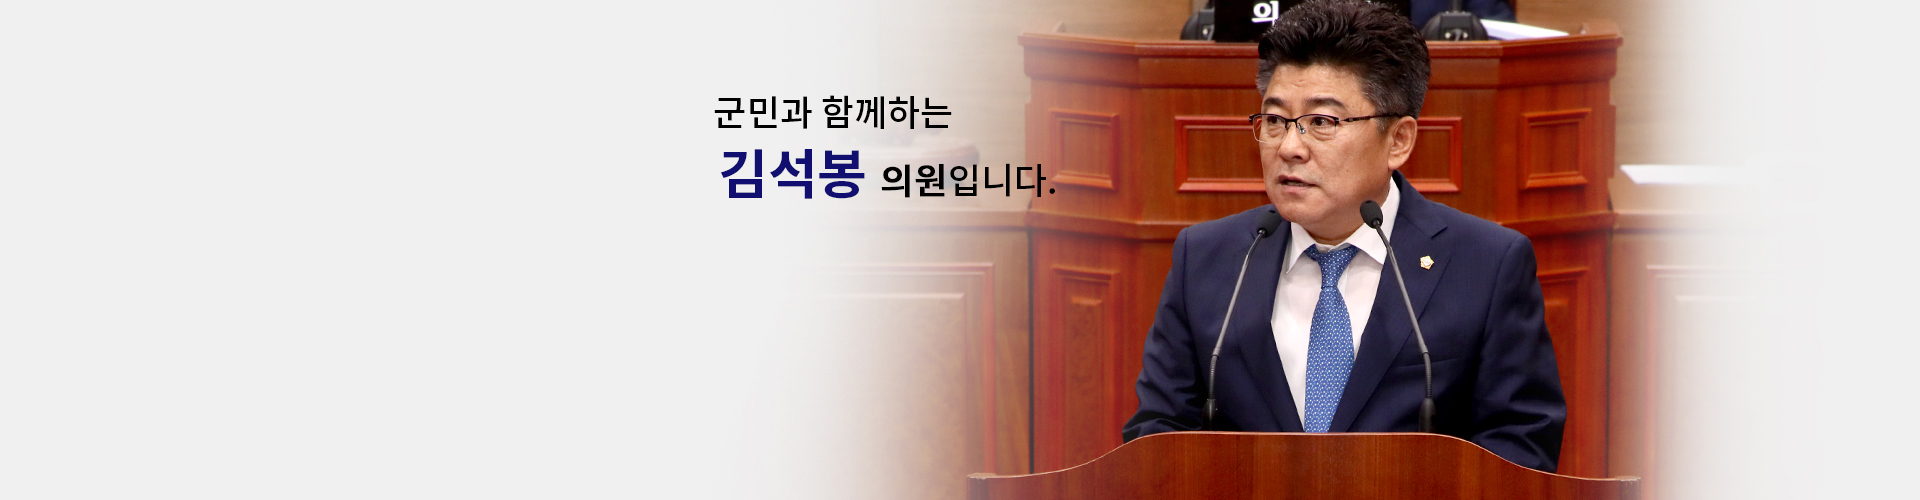 국민과 함께하는 의원 김석봉입니다.